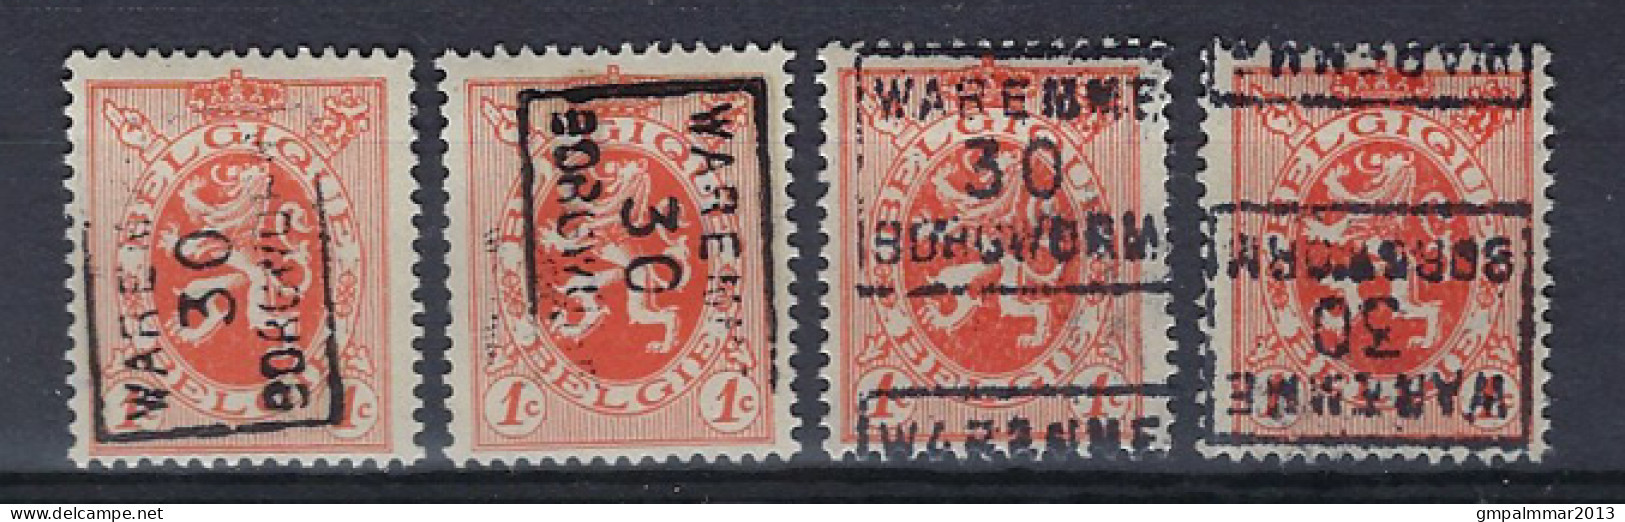 Zegel Nr. 276 Voorafgestempeld Nr. 5664 A + B + C + D  WAREMME 30 BORGWORM ;  Staat Zie Scan ! Lot 264 - Rollenmarken 1930-..